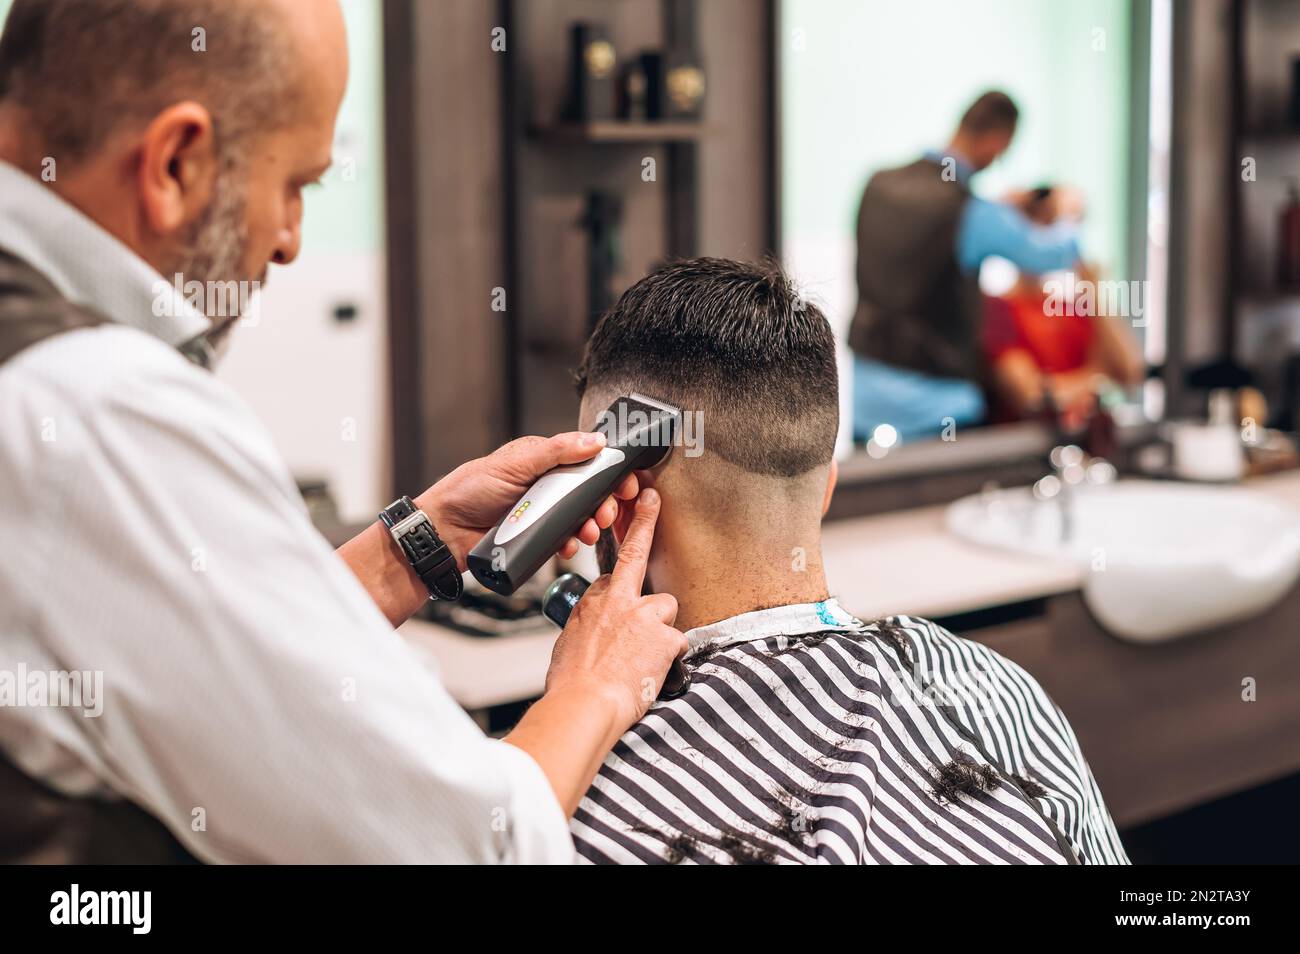 Rückansicht eines Erntegutbariers beim Schneiden dunkler Haare eines männlichen Kunden im modernen Friseursalon während des Arbeitstages Stockfoto